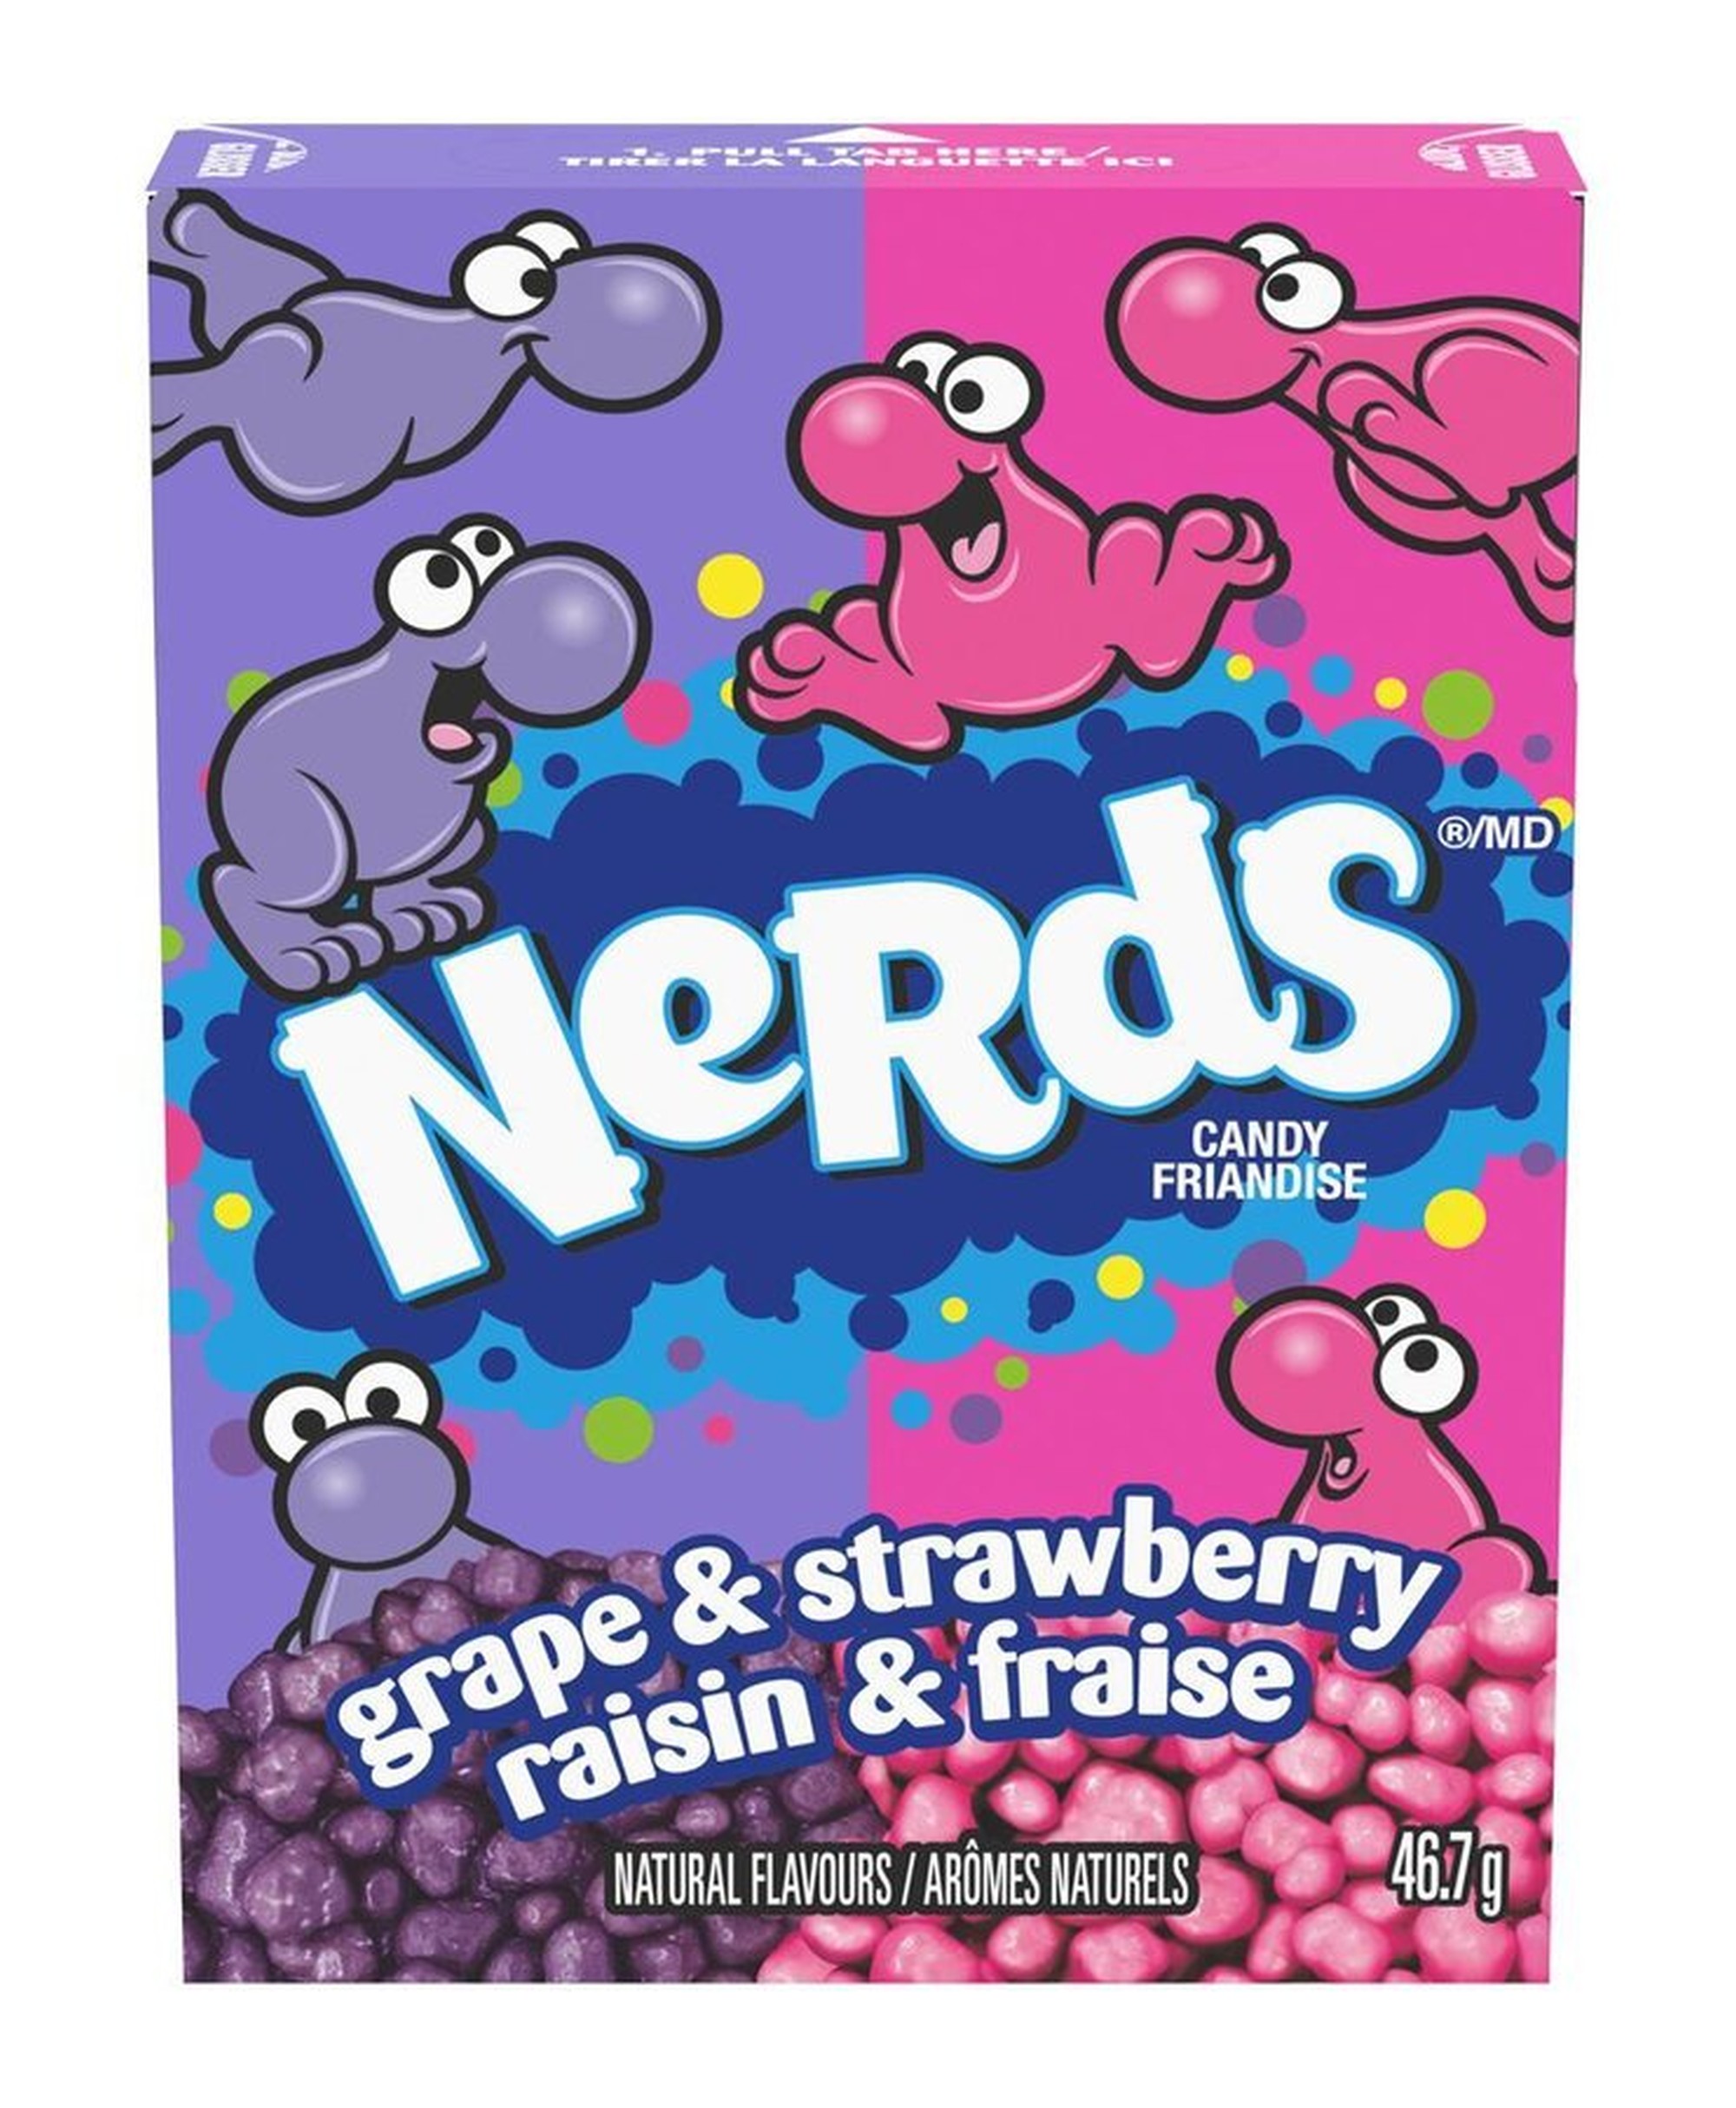 Nerds (candy) - Wikipedia